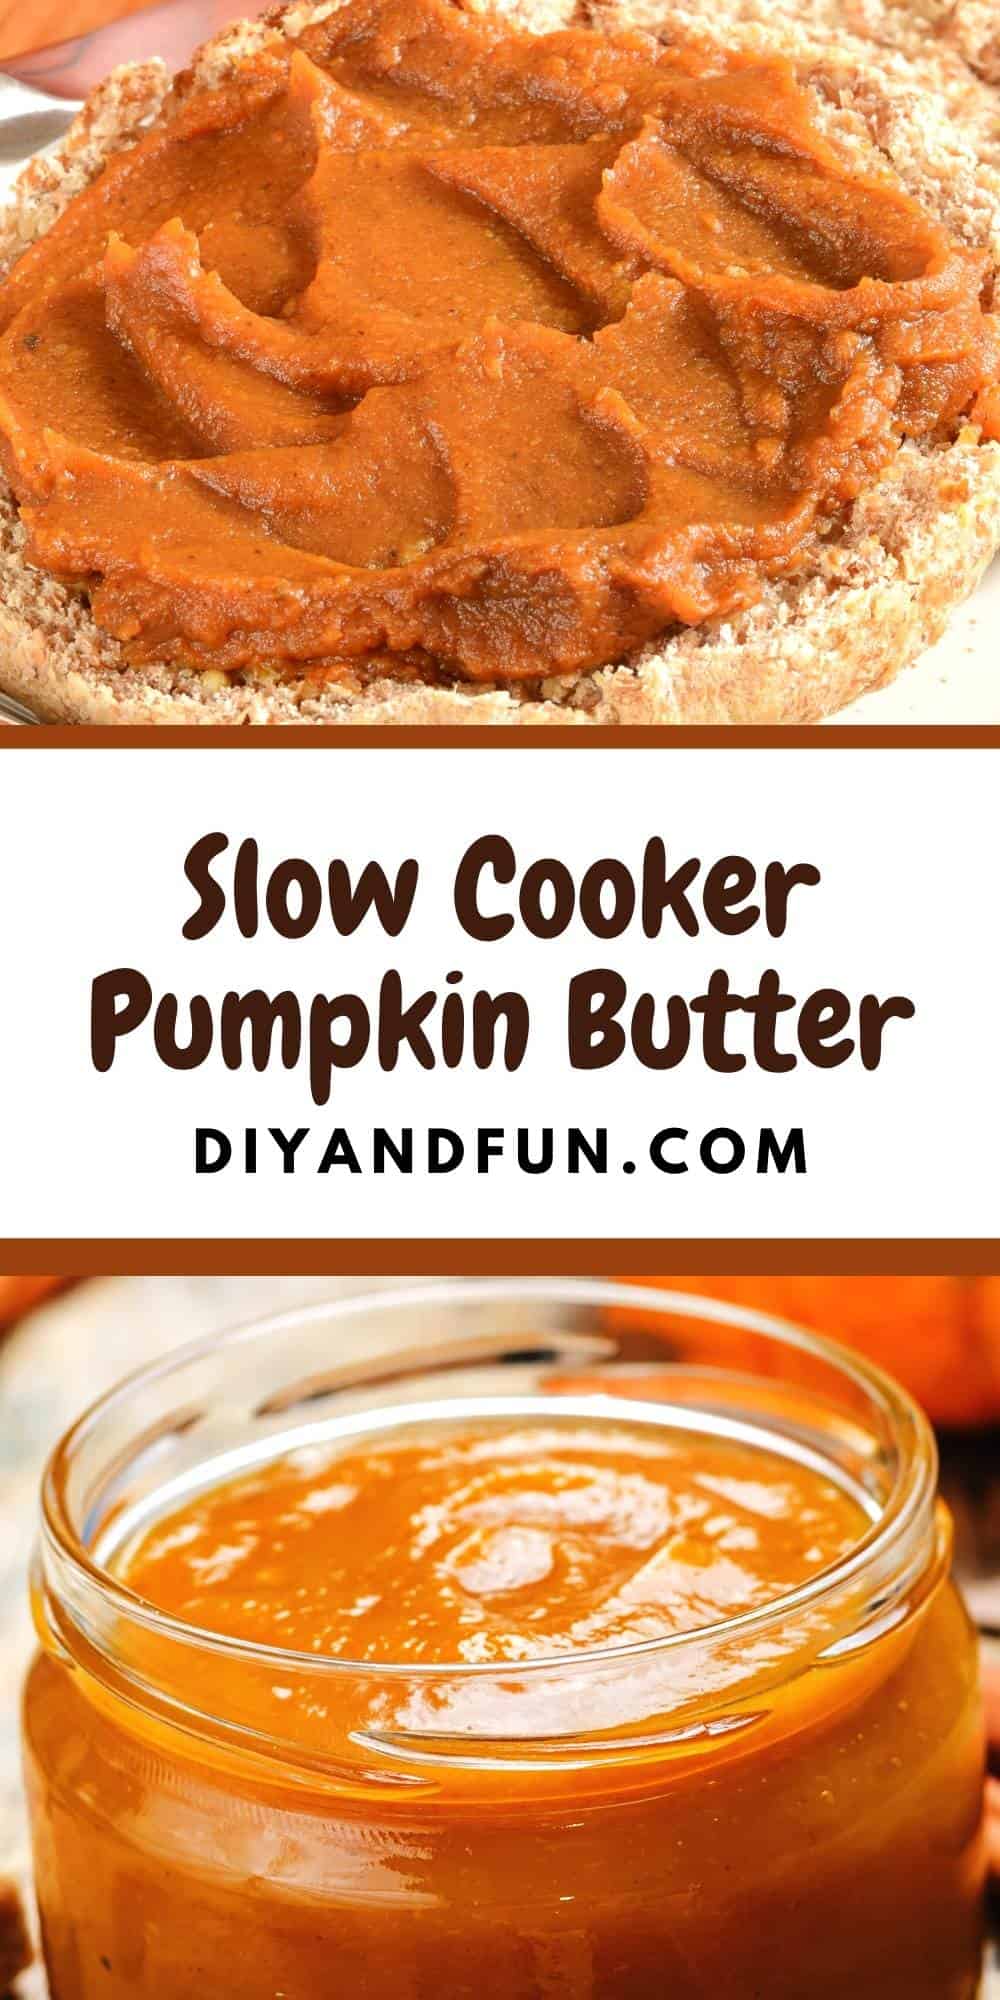 Slow Cooker Pumpkin Butter